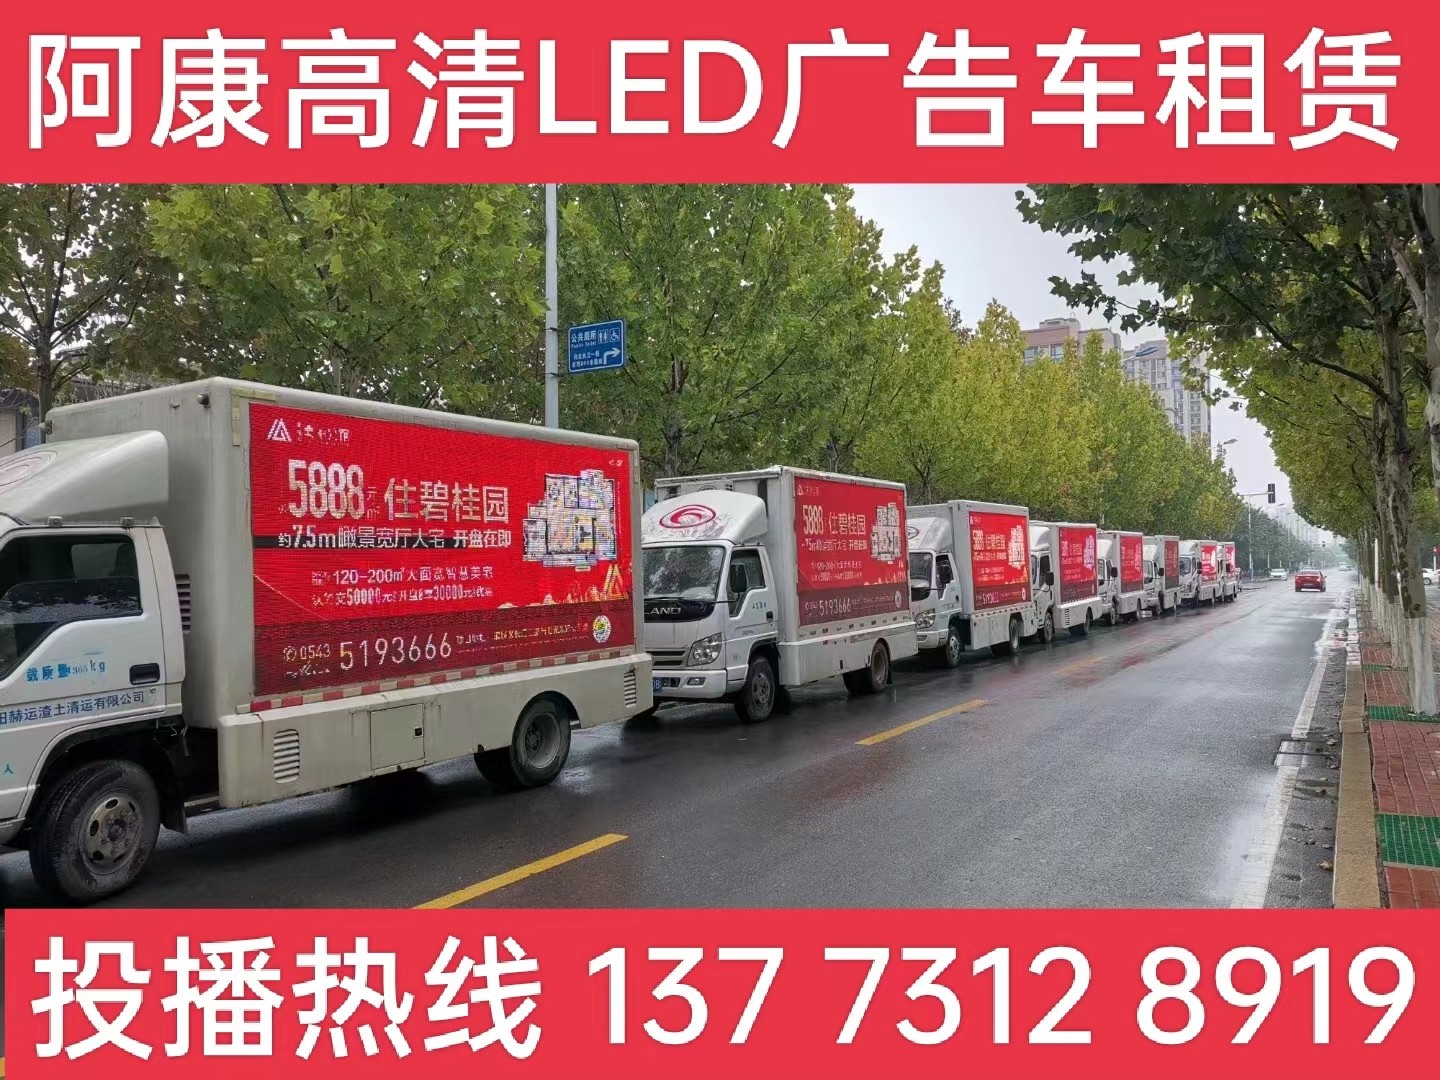 溧阳宣传车租赁公司-楼盘LED广告车投放